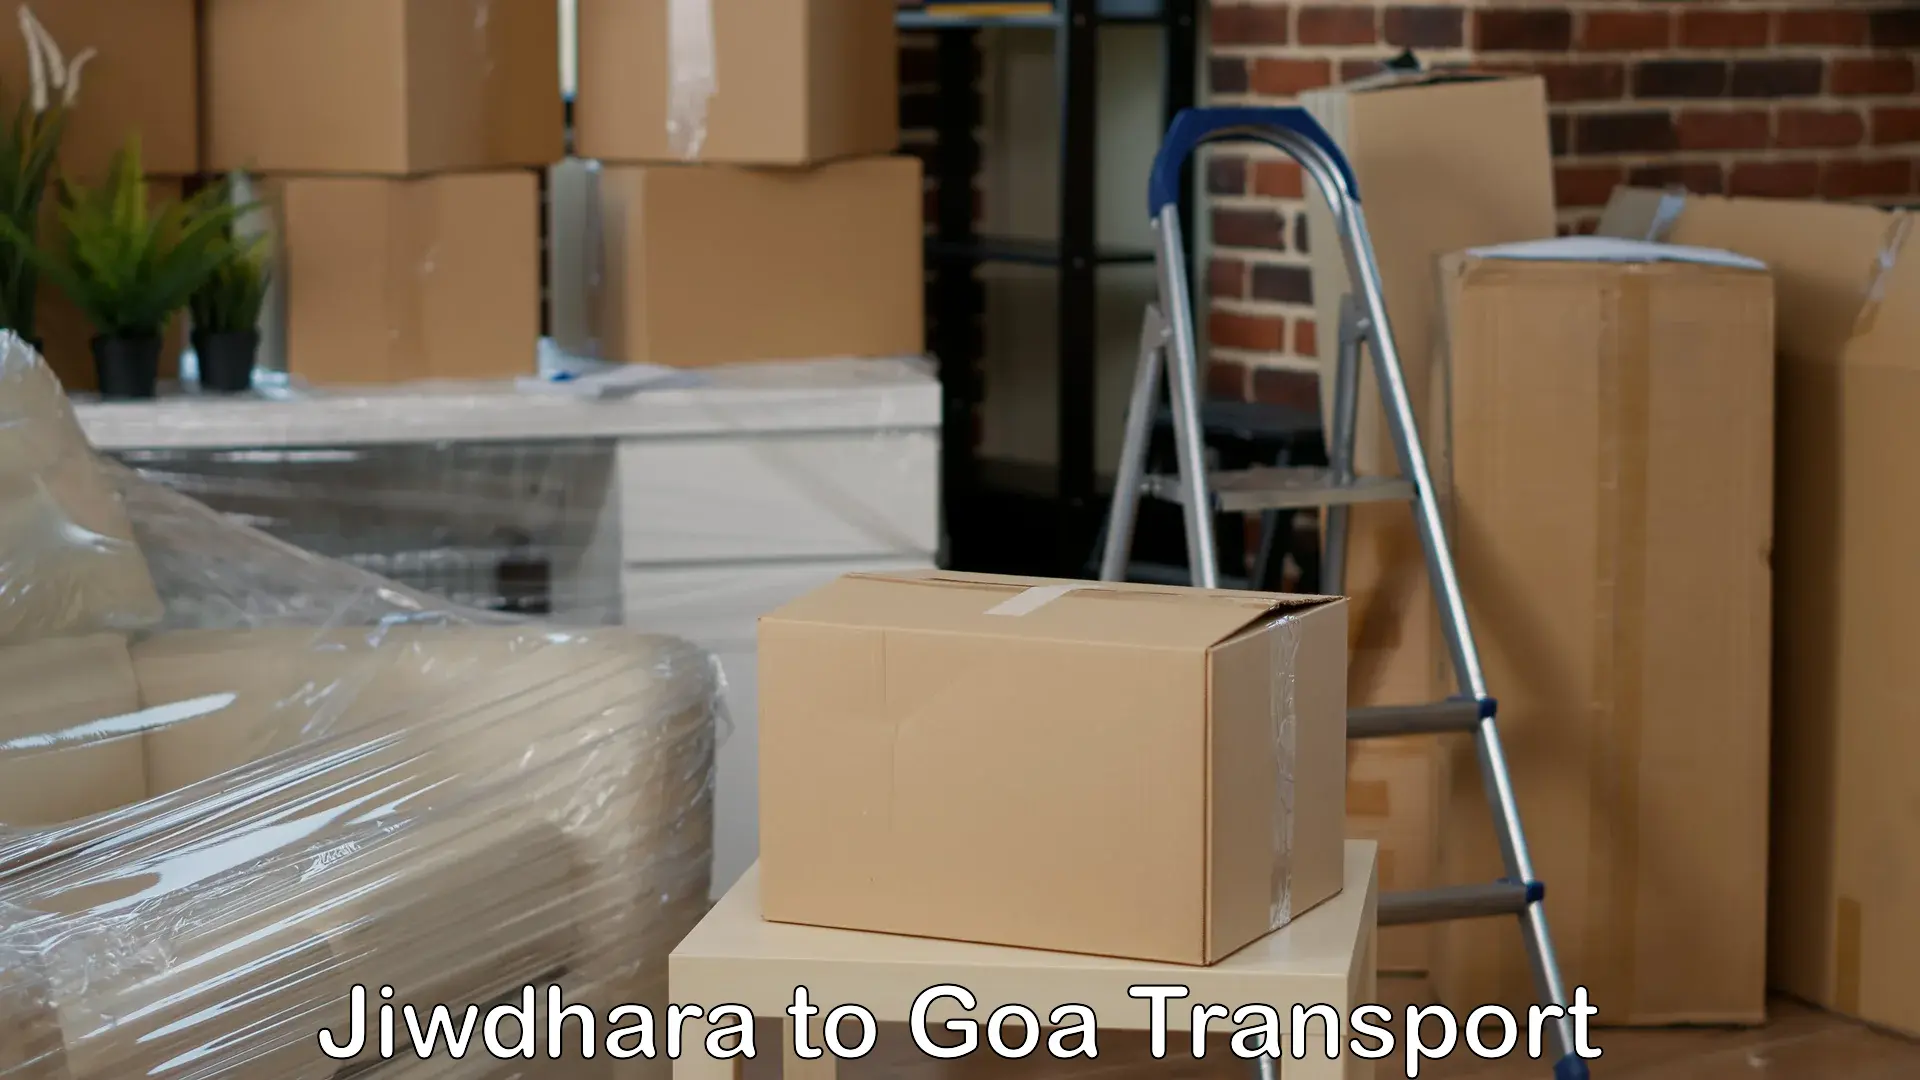 Transport in sharing in Jiwdhara to Goa